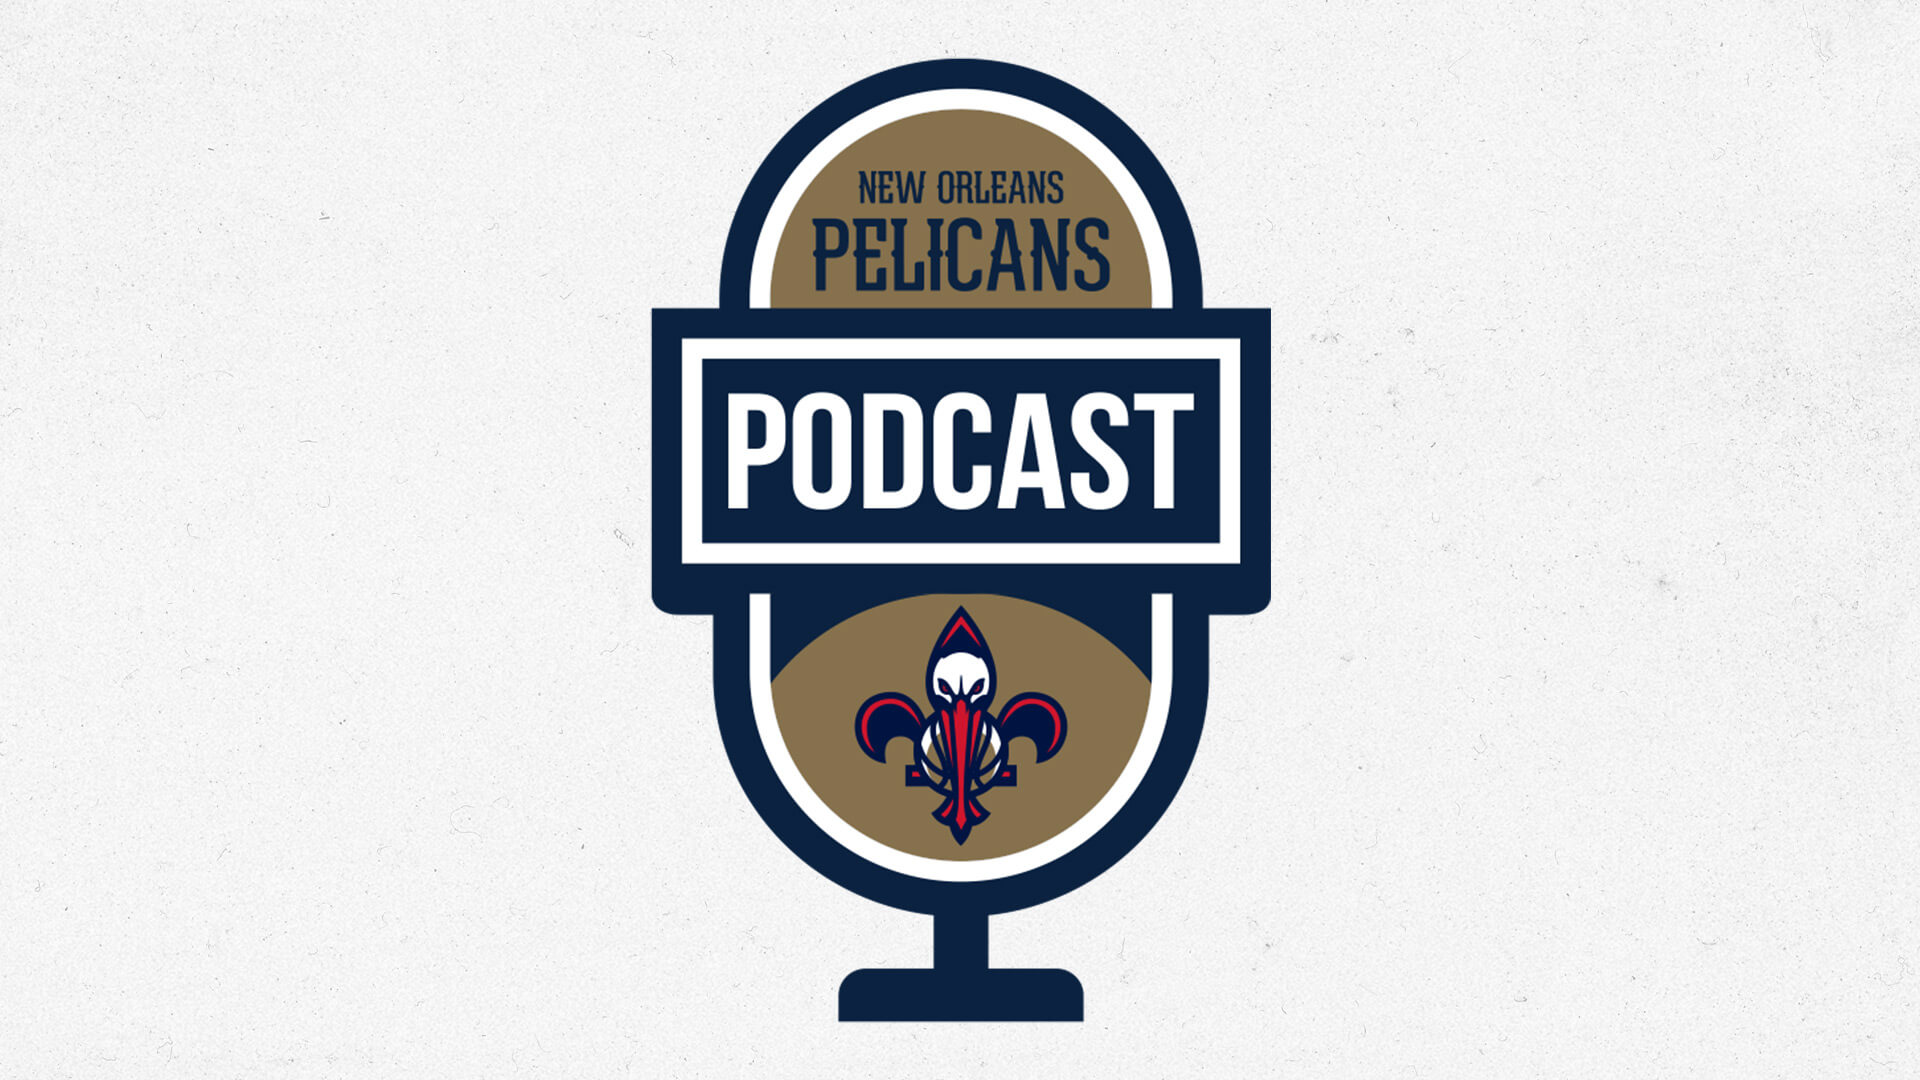 Pelicans social media team talks career paths, NBA player content | Pelicans Podcast